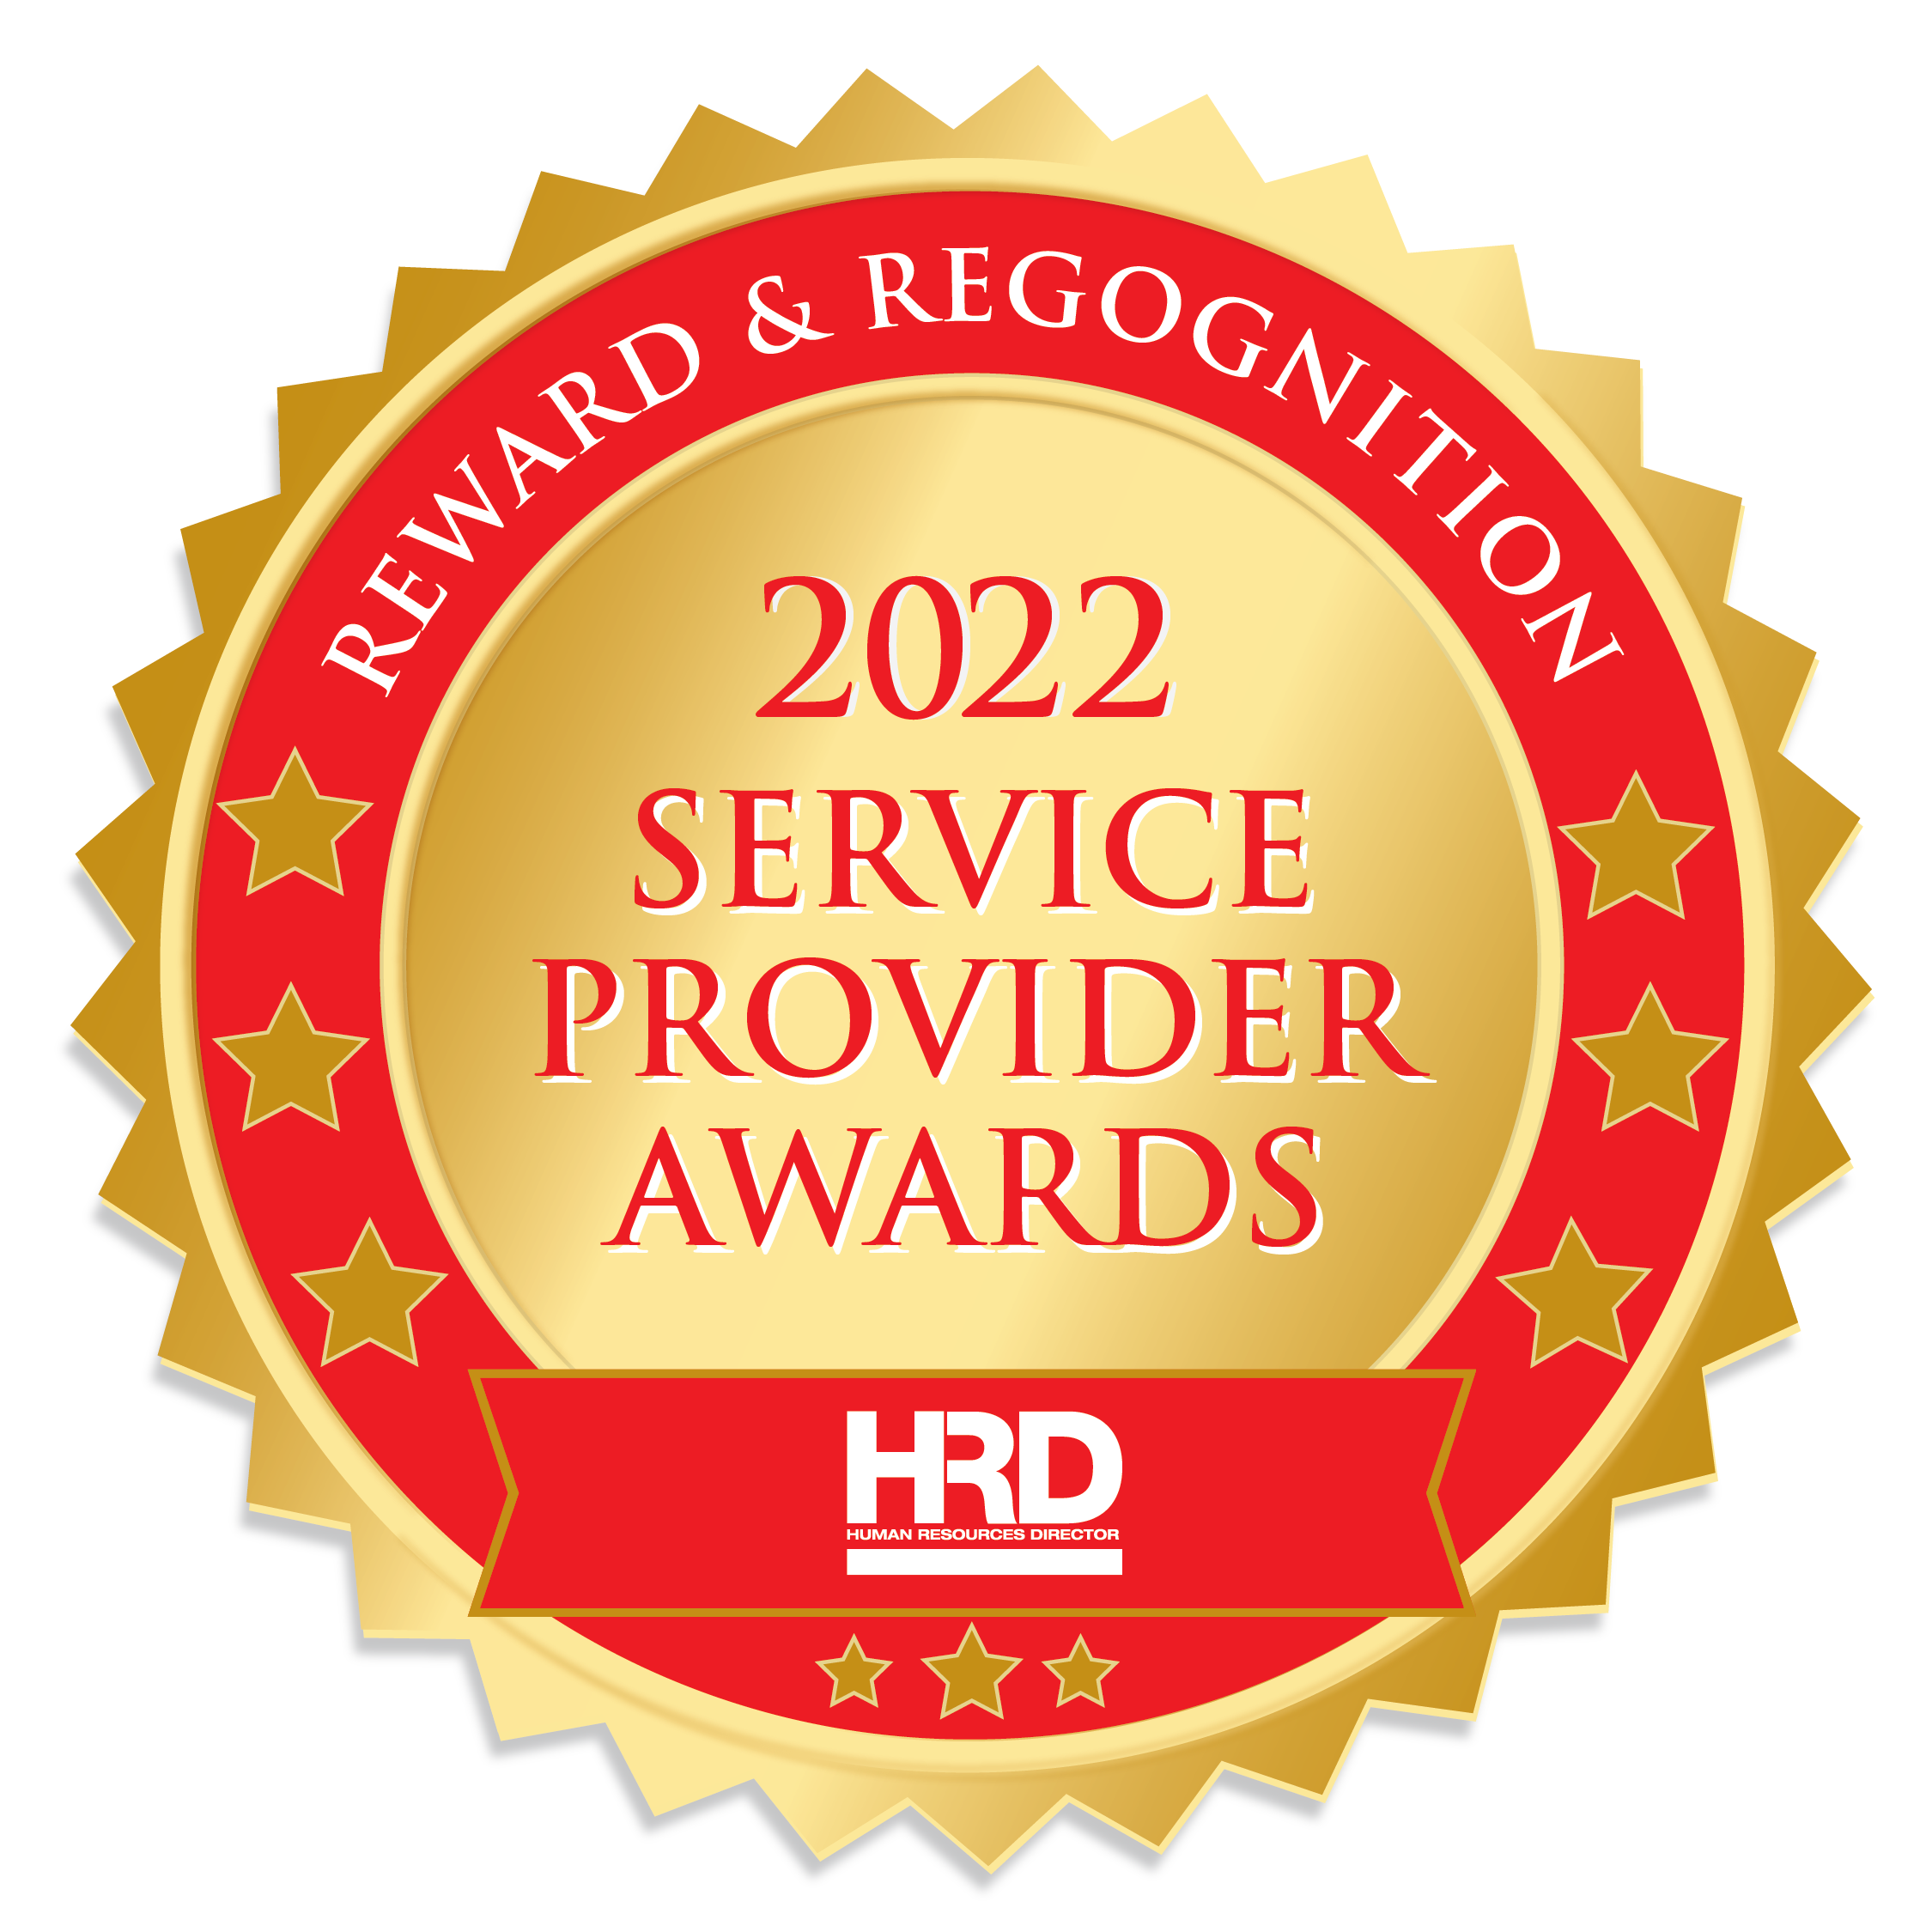 HRD Service Provider Awards 2022 - Reward & Recognition-Gold